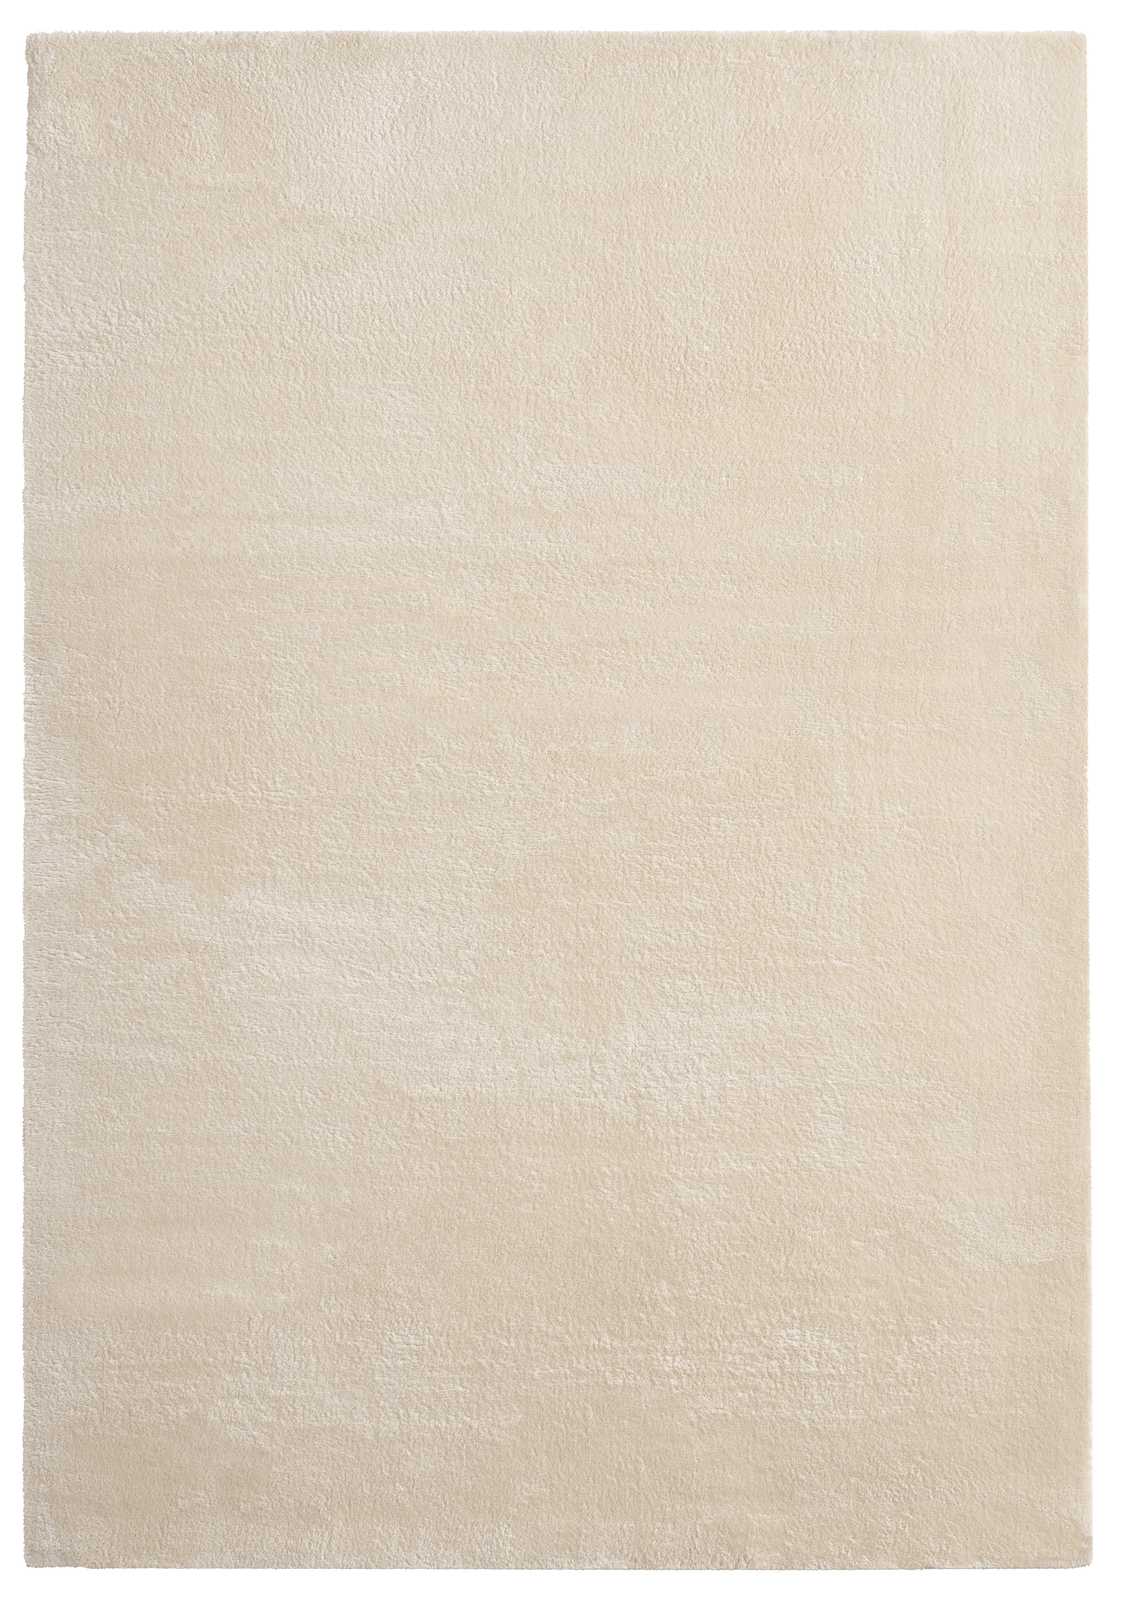             Zacht hoogpolig tapijt in beige - 290 x 200 cm
        